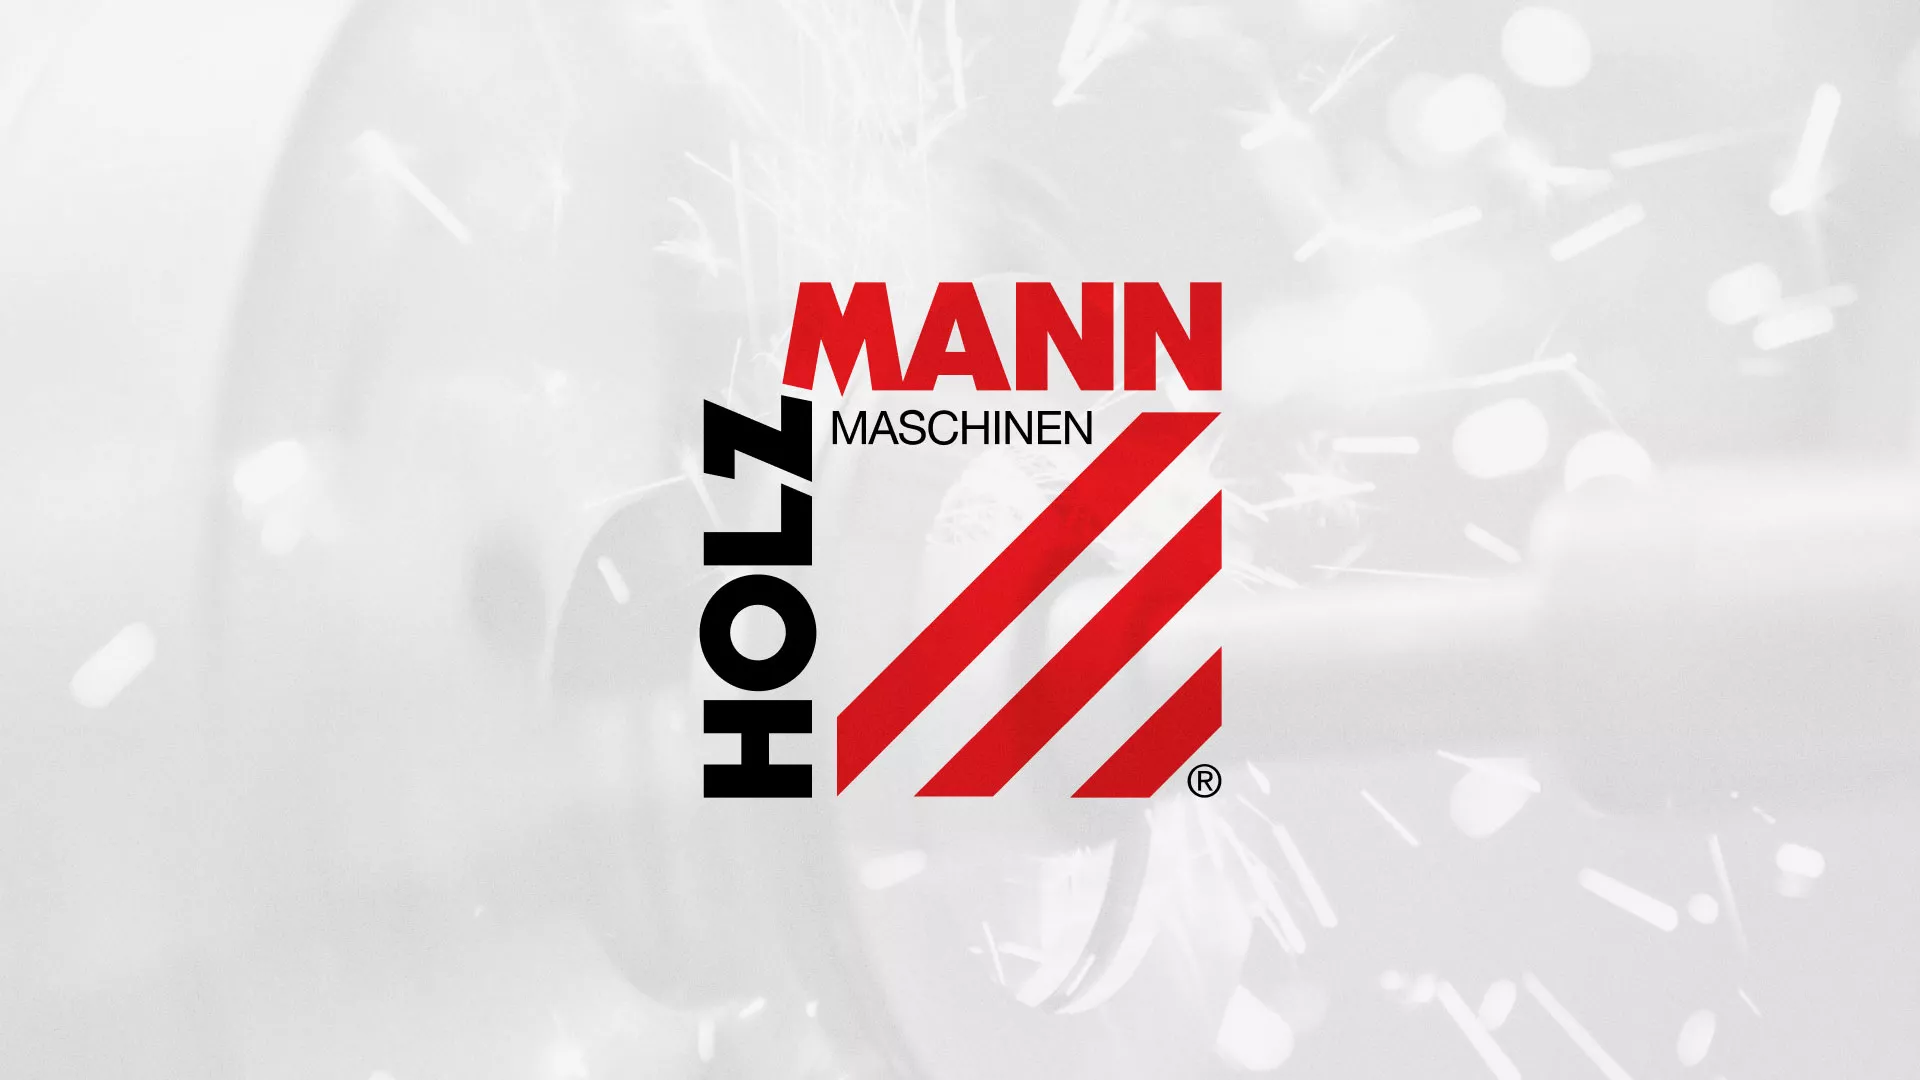 Создание сайта компании «HOLZMANN Maschinen GmbH» в Асино